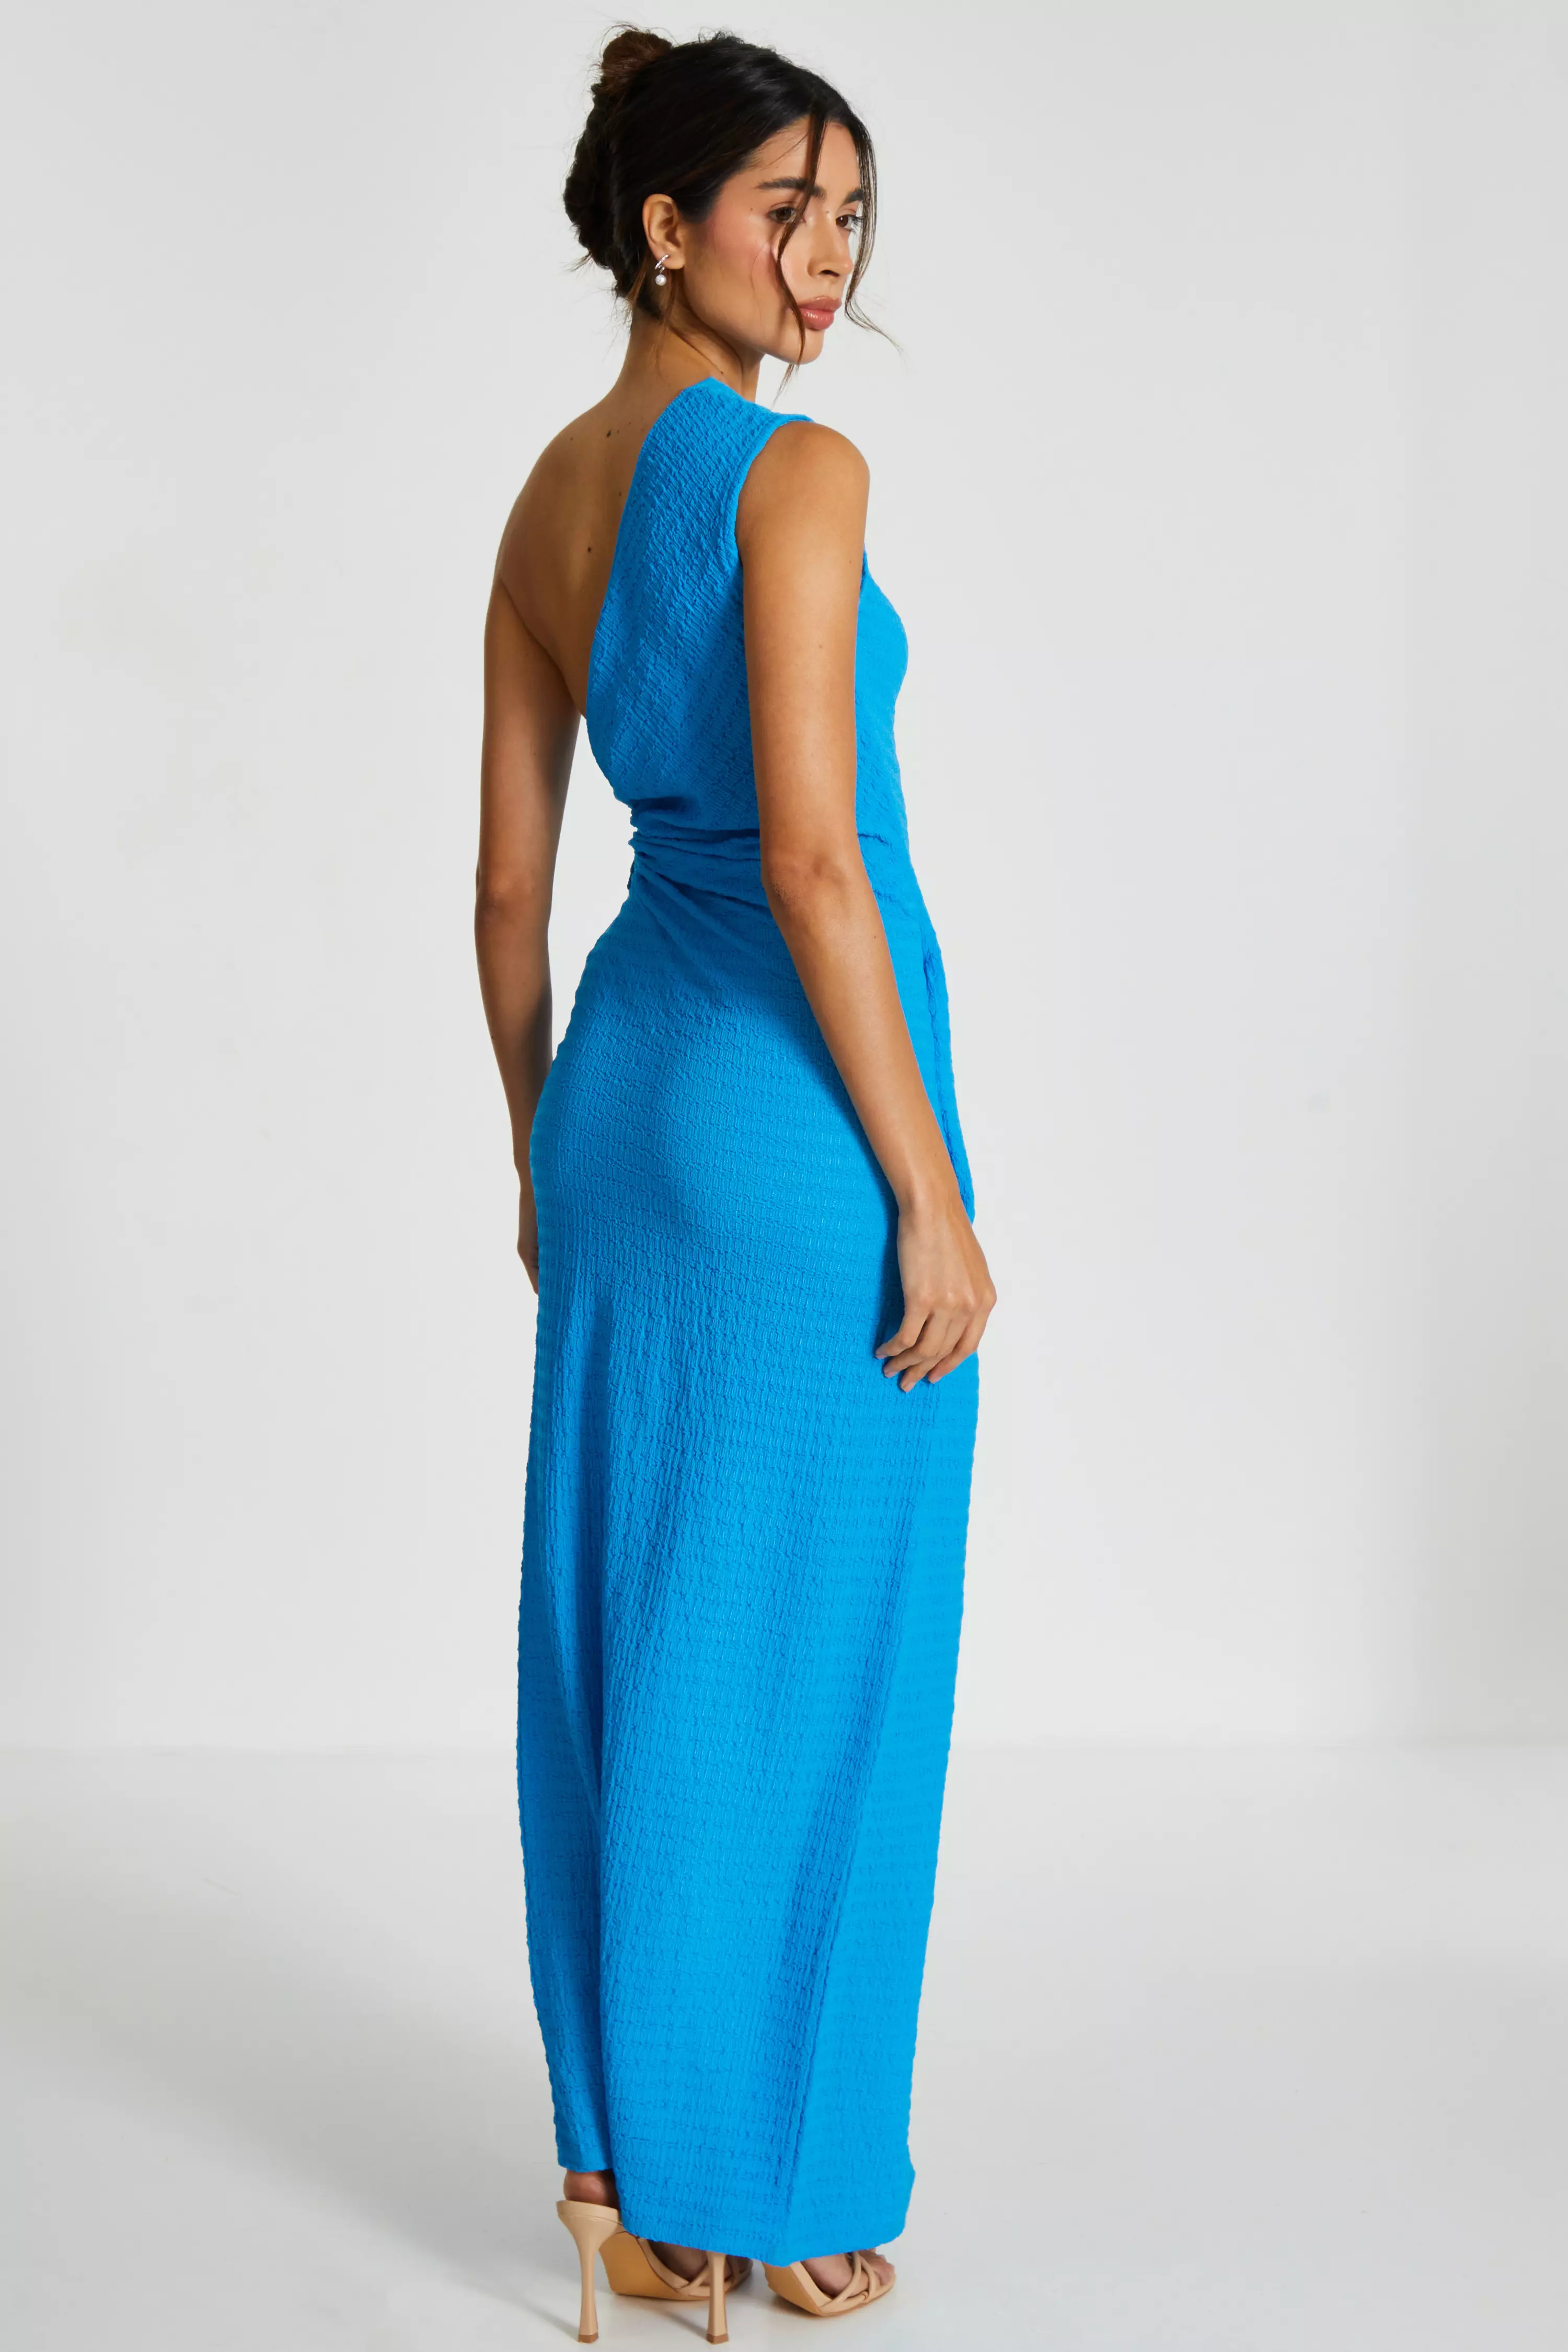 Blue One Shoulder Wrap Cut Out Midaxi Dress